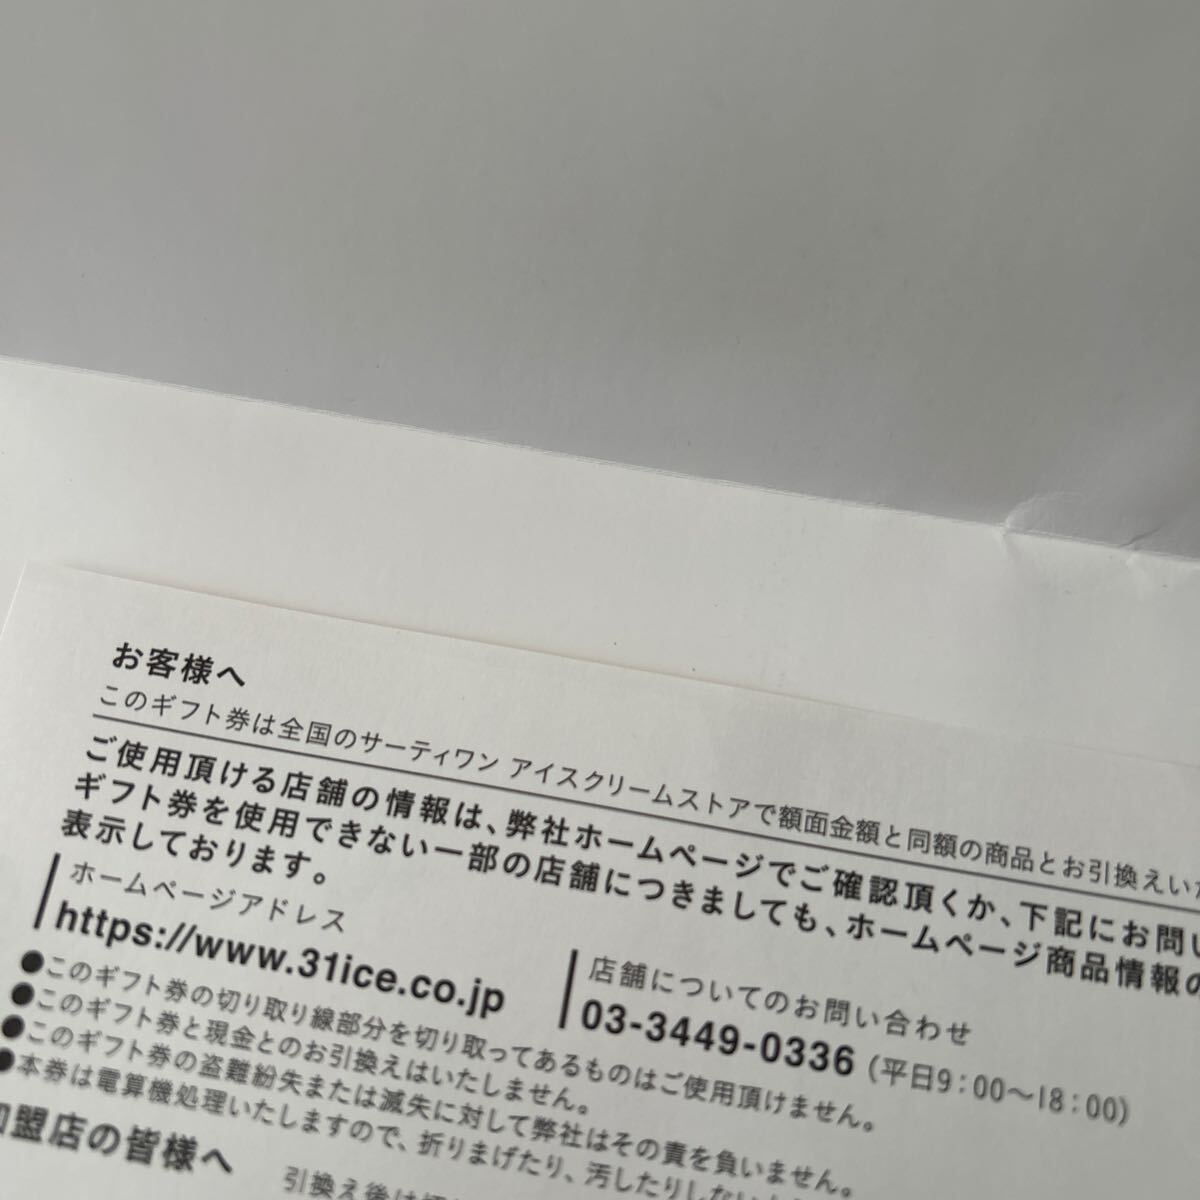 sa-ti one мороженое подарочный сертификат подарок карта 500 иен 